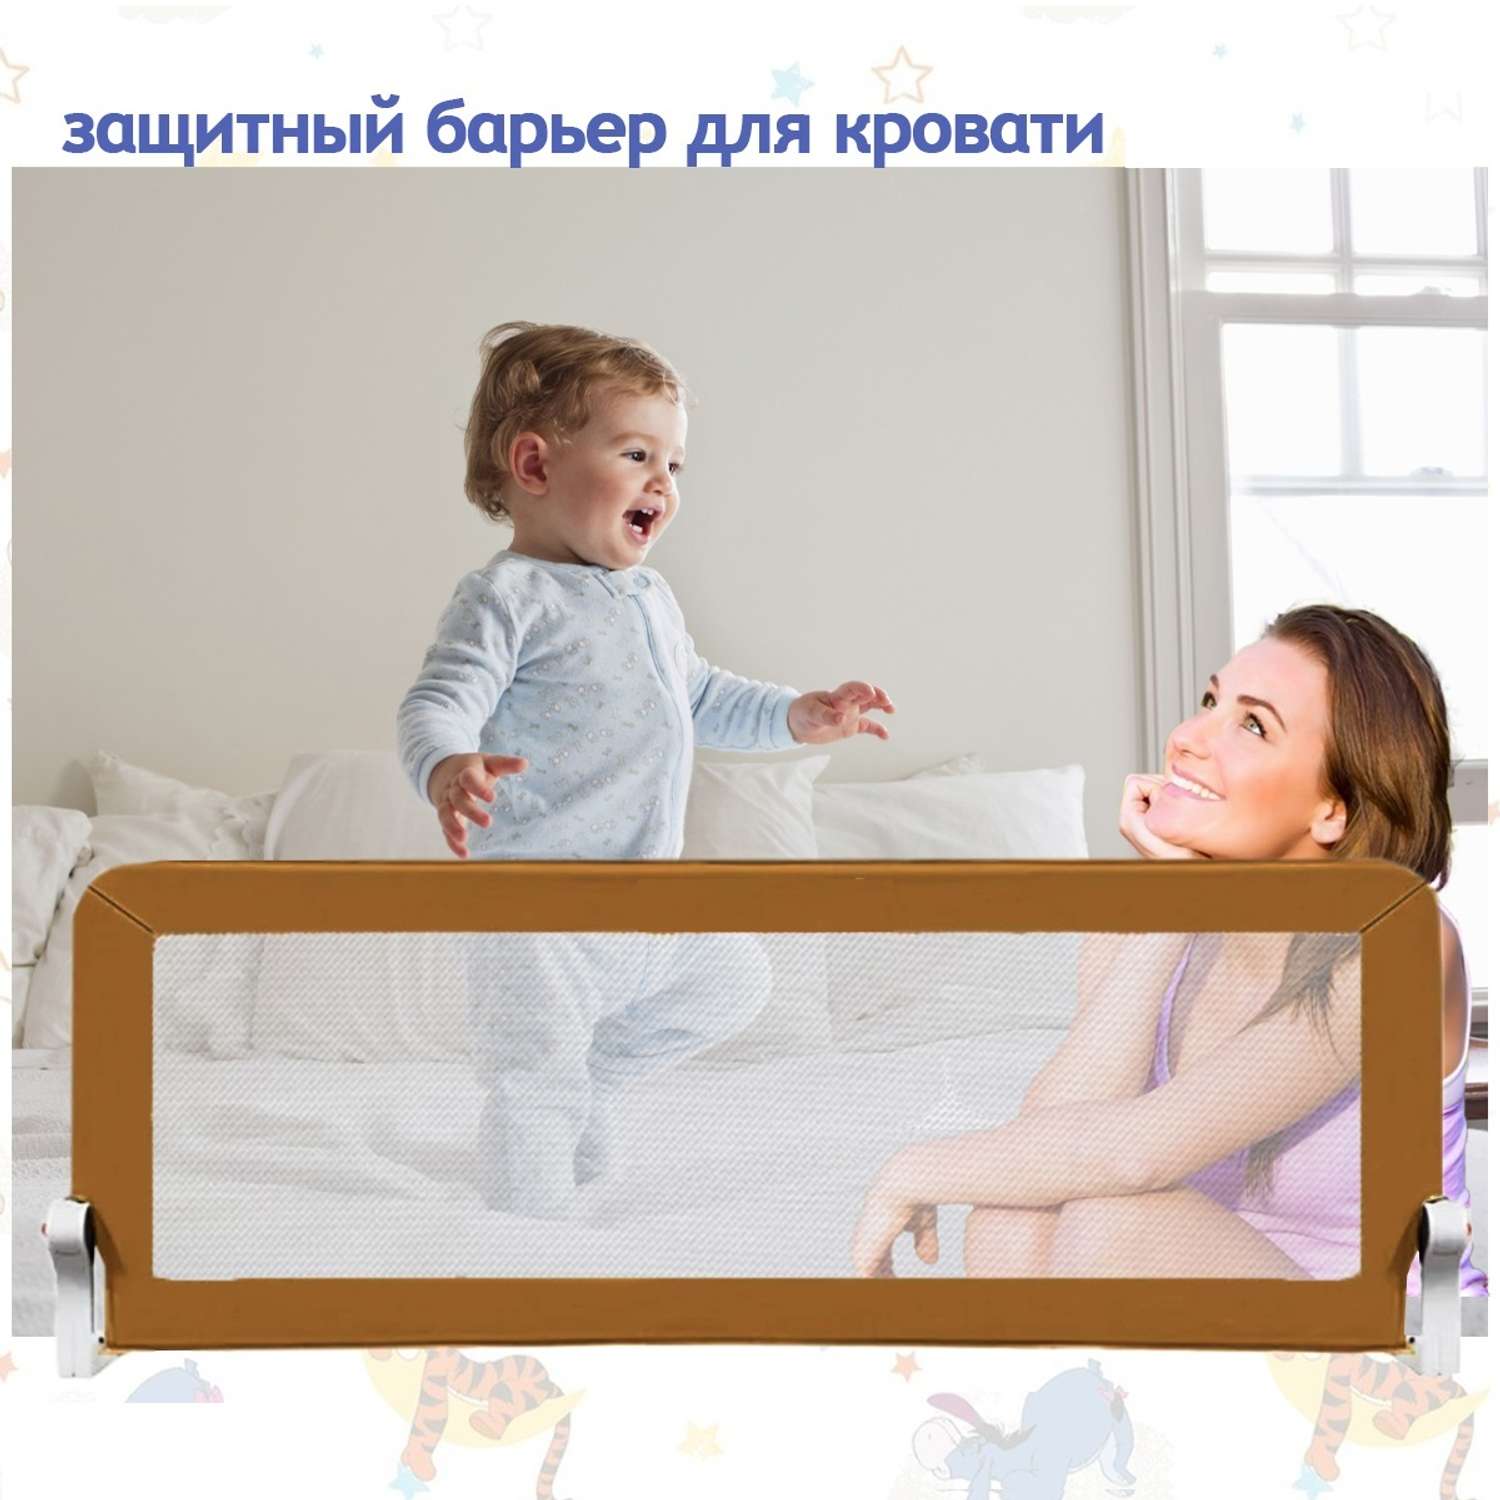 Высота детских двухъярусных кроватей